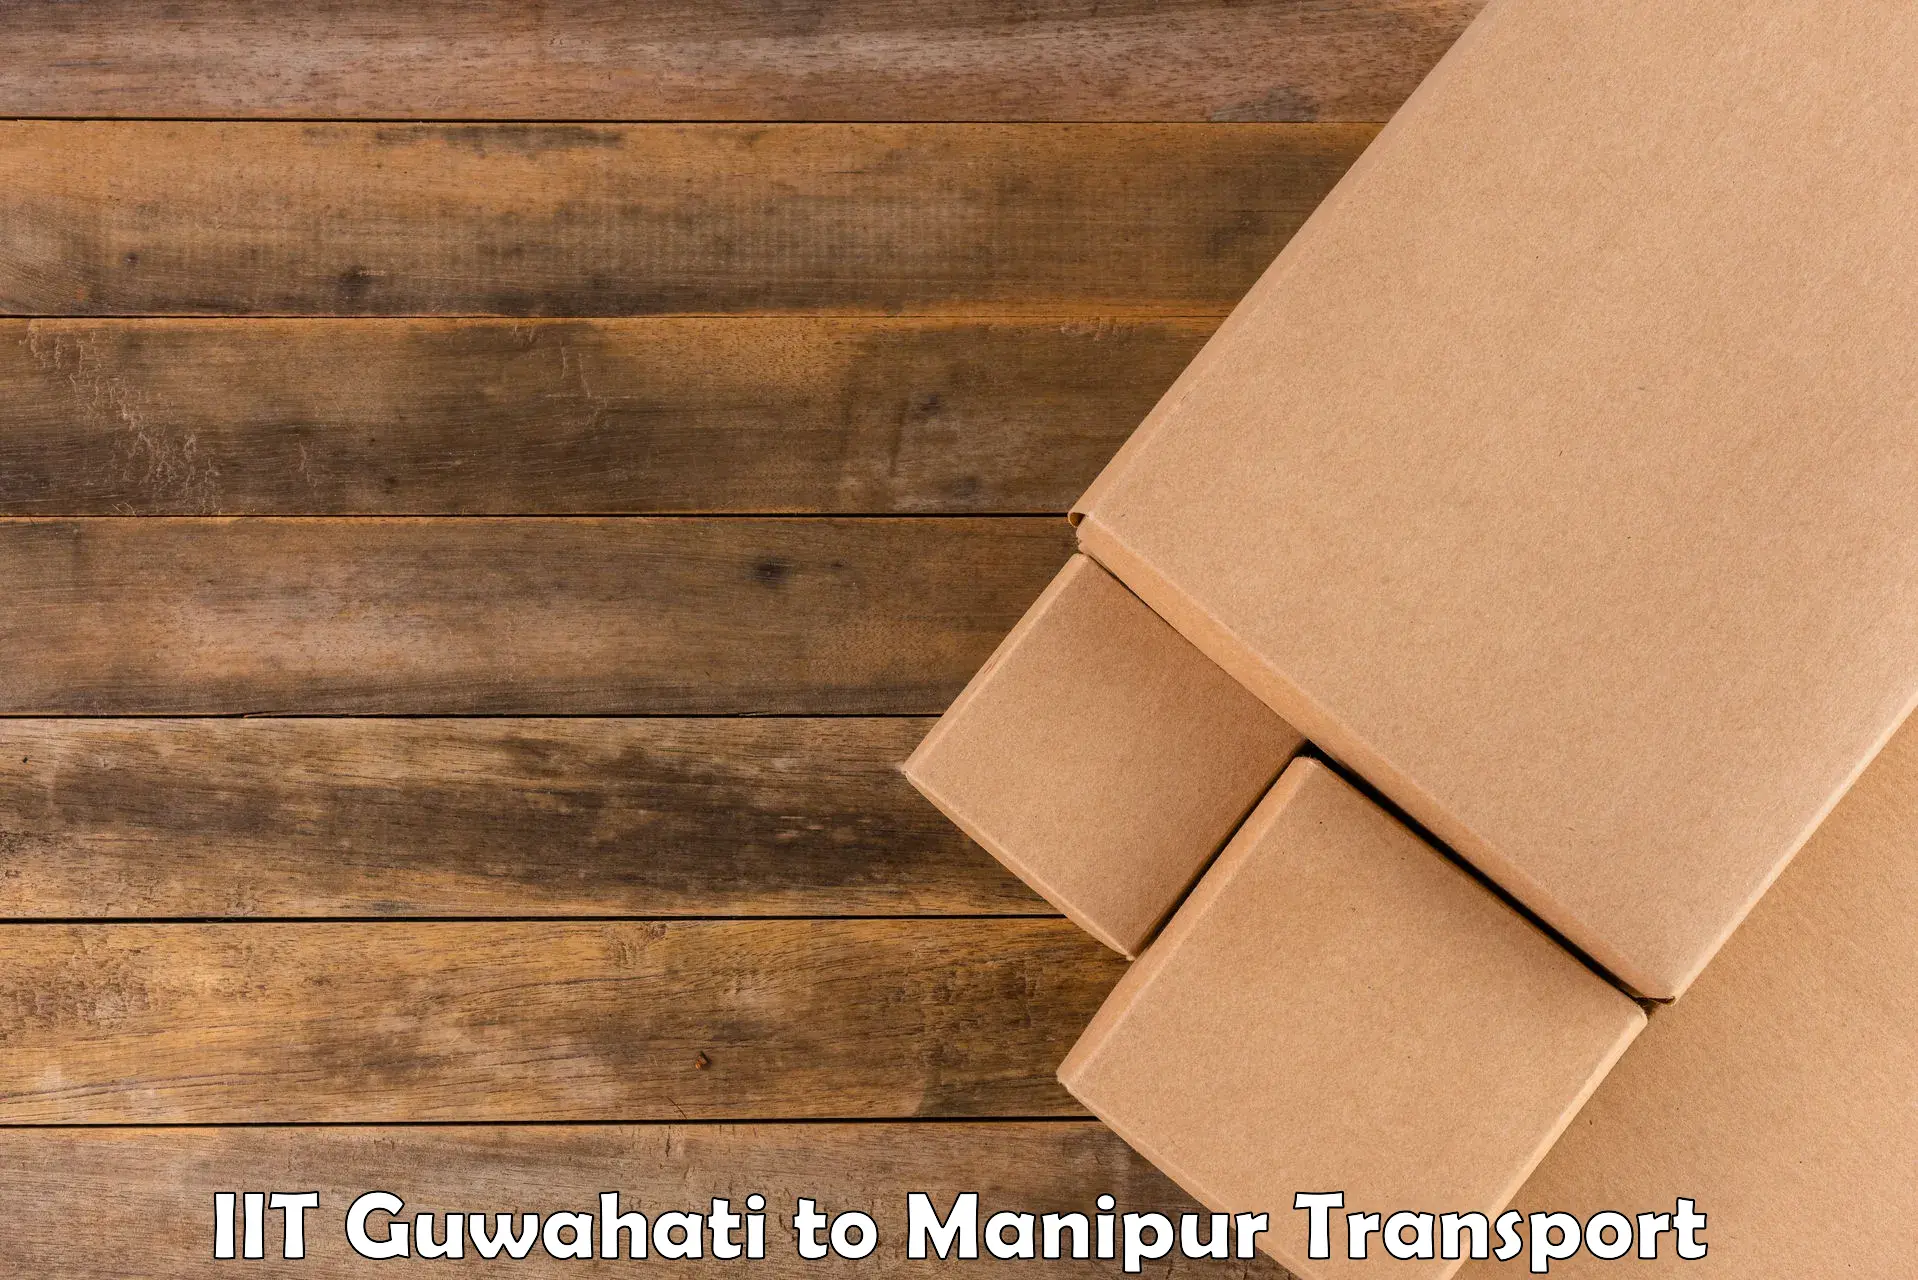 Express transport services IIT Guwahati to Churachandpur